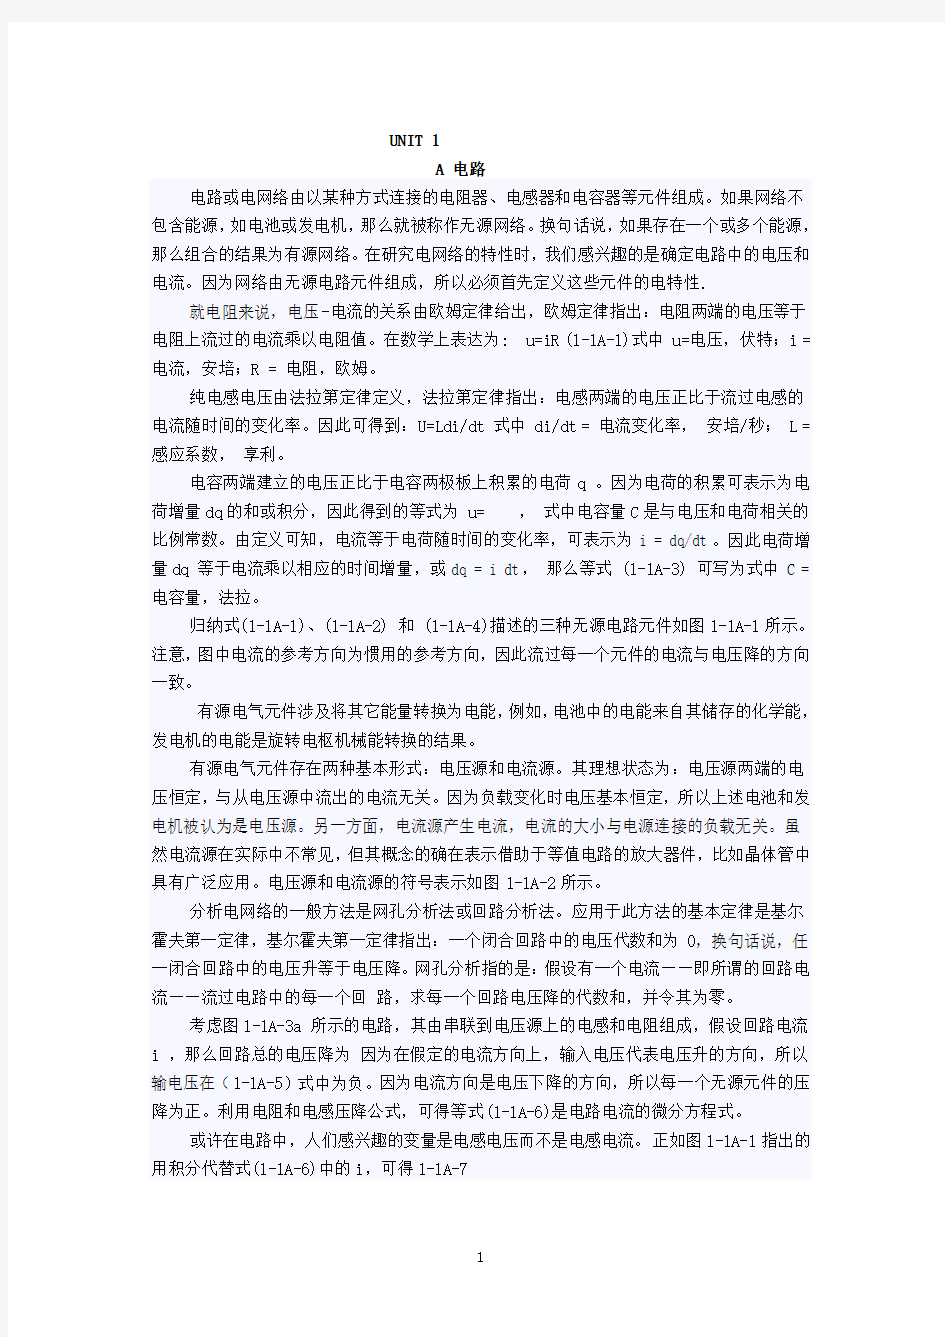 自动化专业英语教程 王宏文 全文全套翻译版